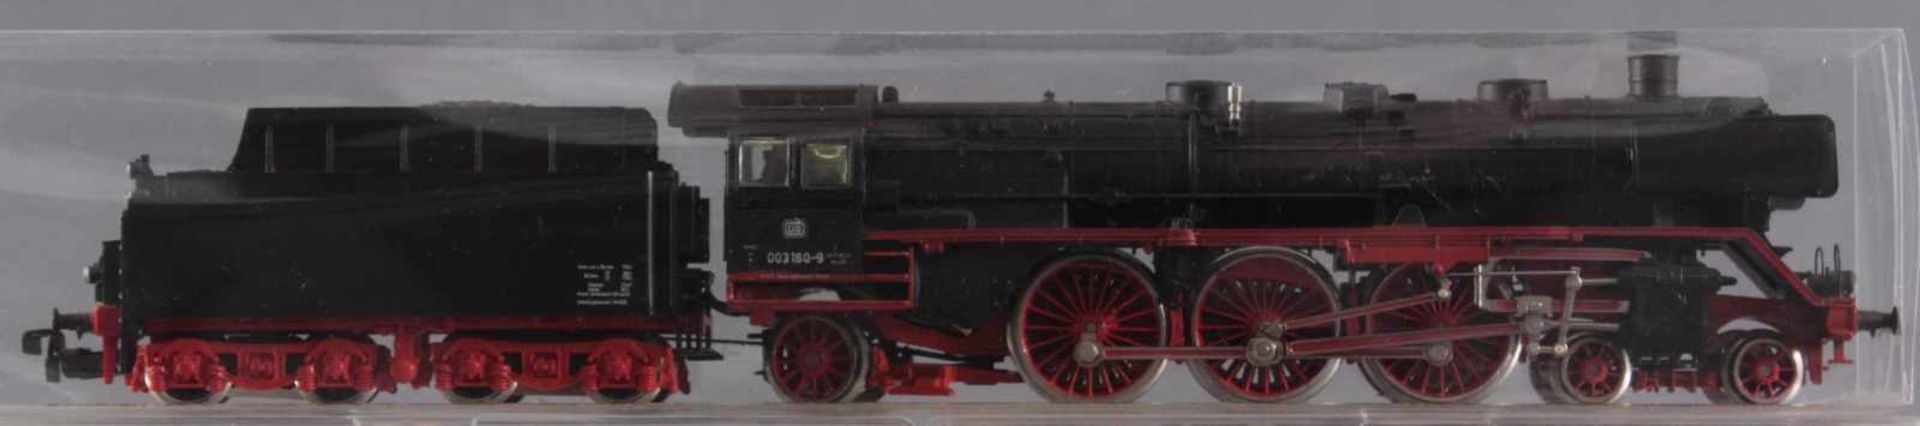 Märklin H0 Dampflok 003 160-9 mit 6 Fleischmann GüterwaggonsModellnummer der Waggons 5885, 5300, - Bild 2 aus 2